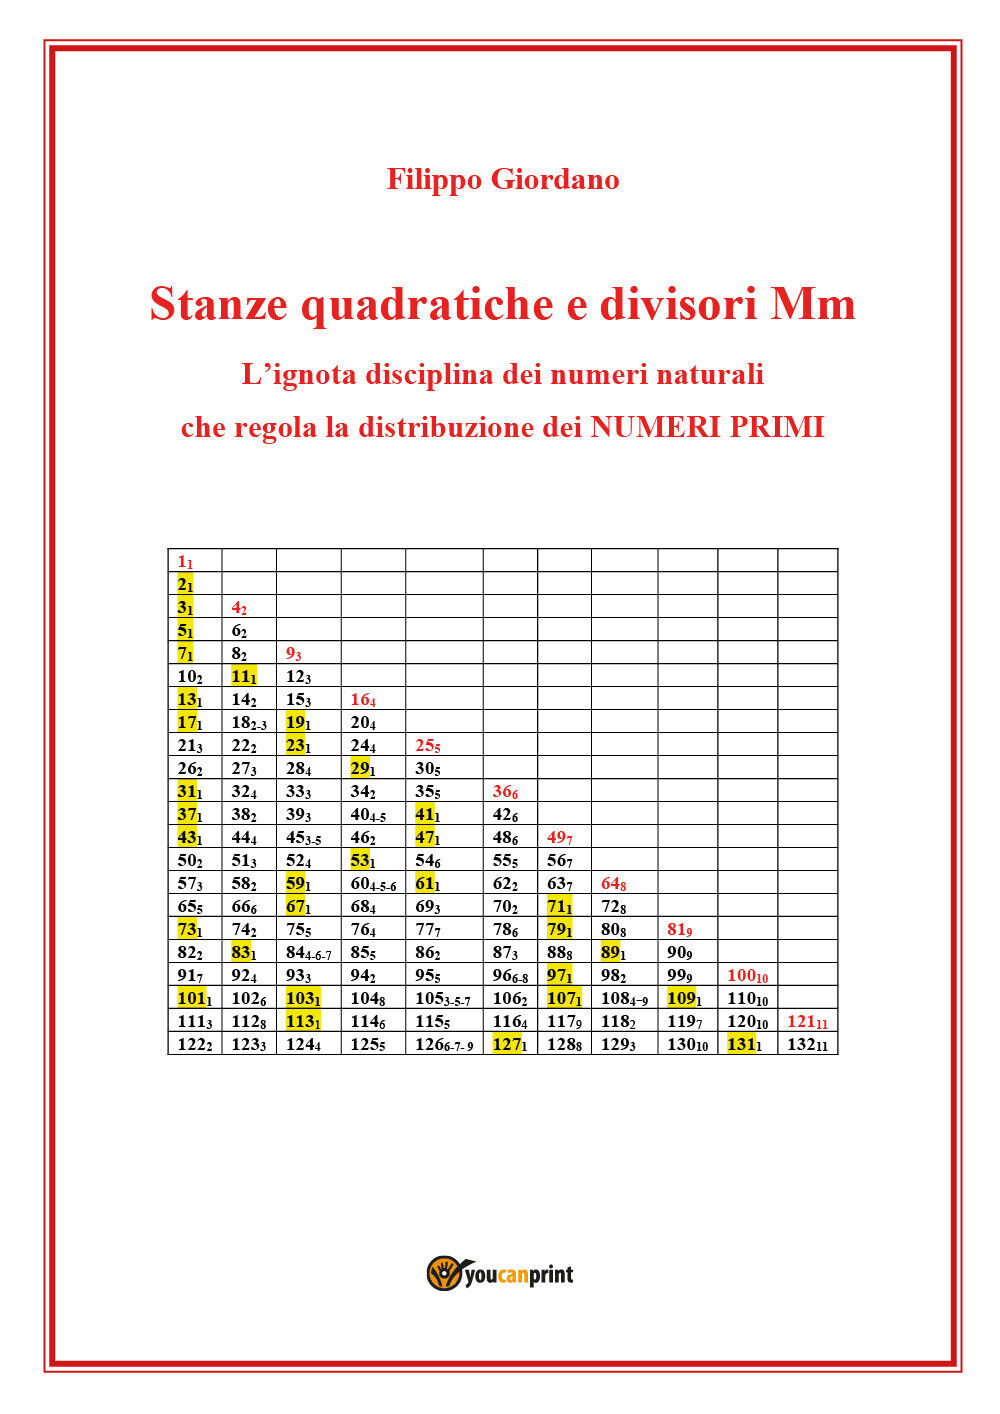 Stanze quadratiche e divisori Mm, la disciplina dei numeri naturali che regola l